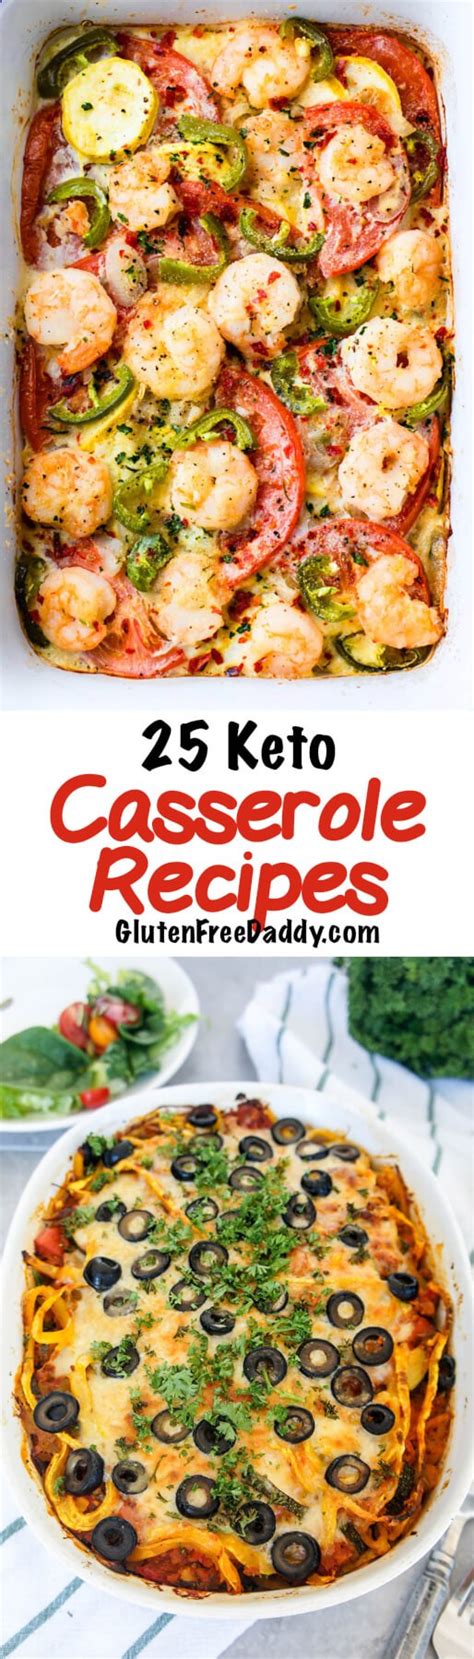 Seafood casserole with shrimp, scallops and crab meat. Est Seafood Casserole : Brunch aux asperges et aux pommes de terre - Vivre délicieusement ...